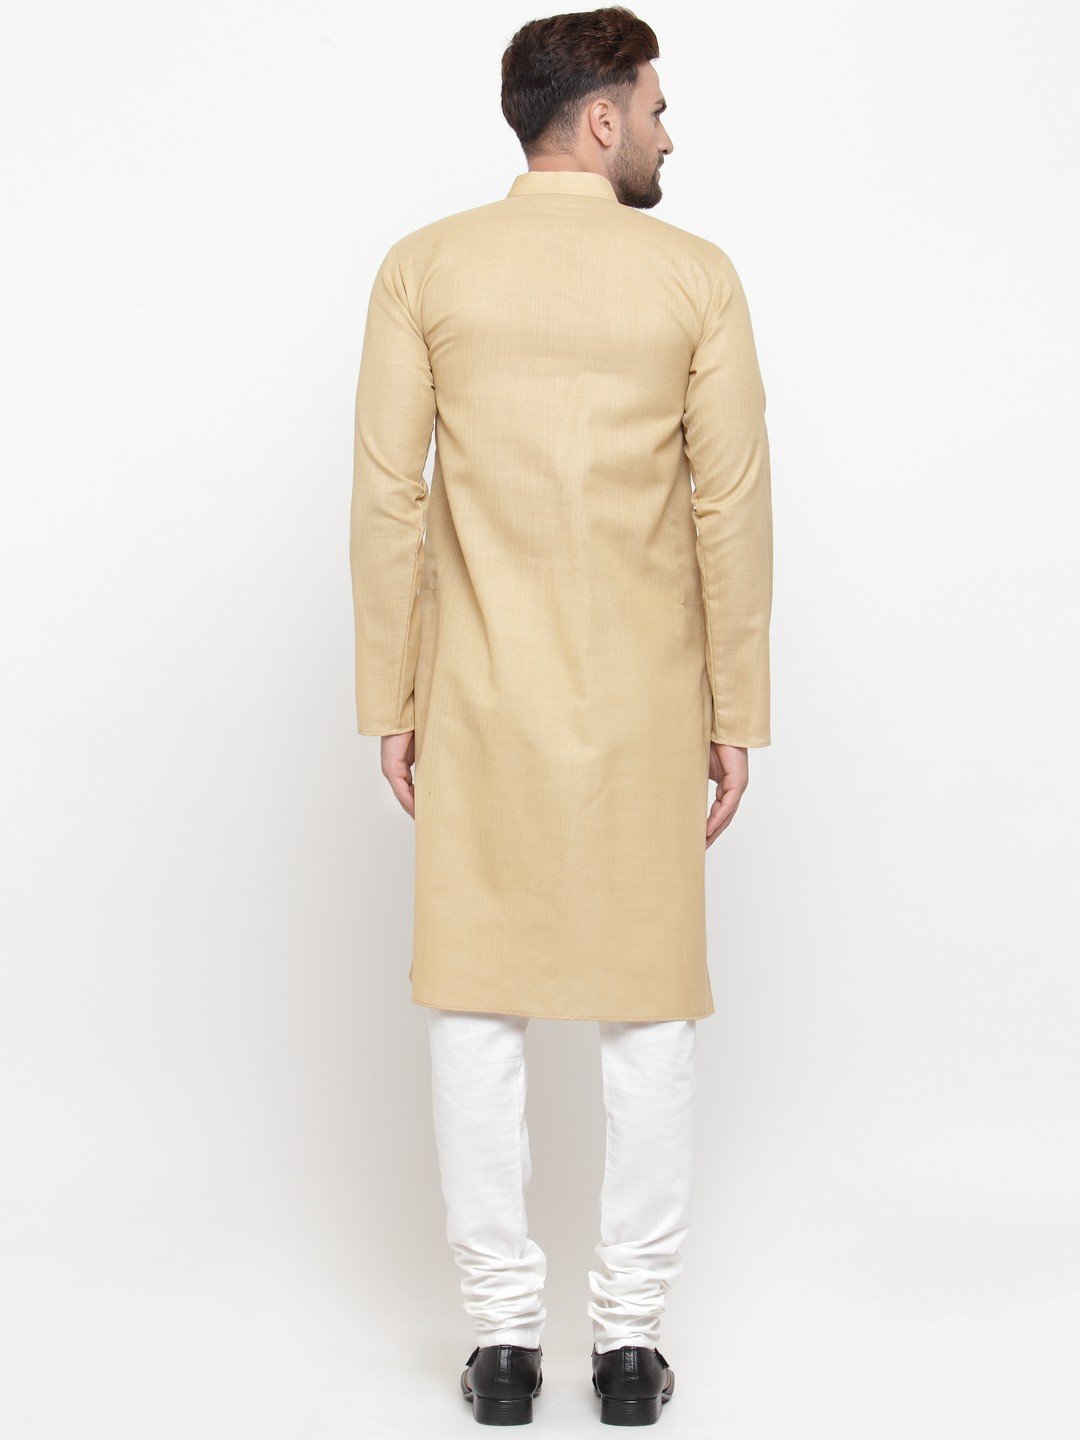 Men's Beige & White Solid Kurta with Churidar ( JOKP 532 Beige ) - Virat Fashions